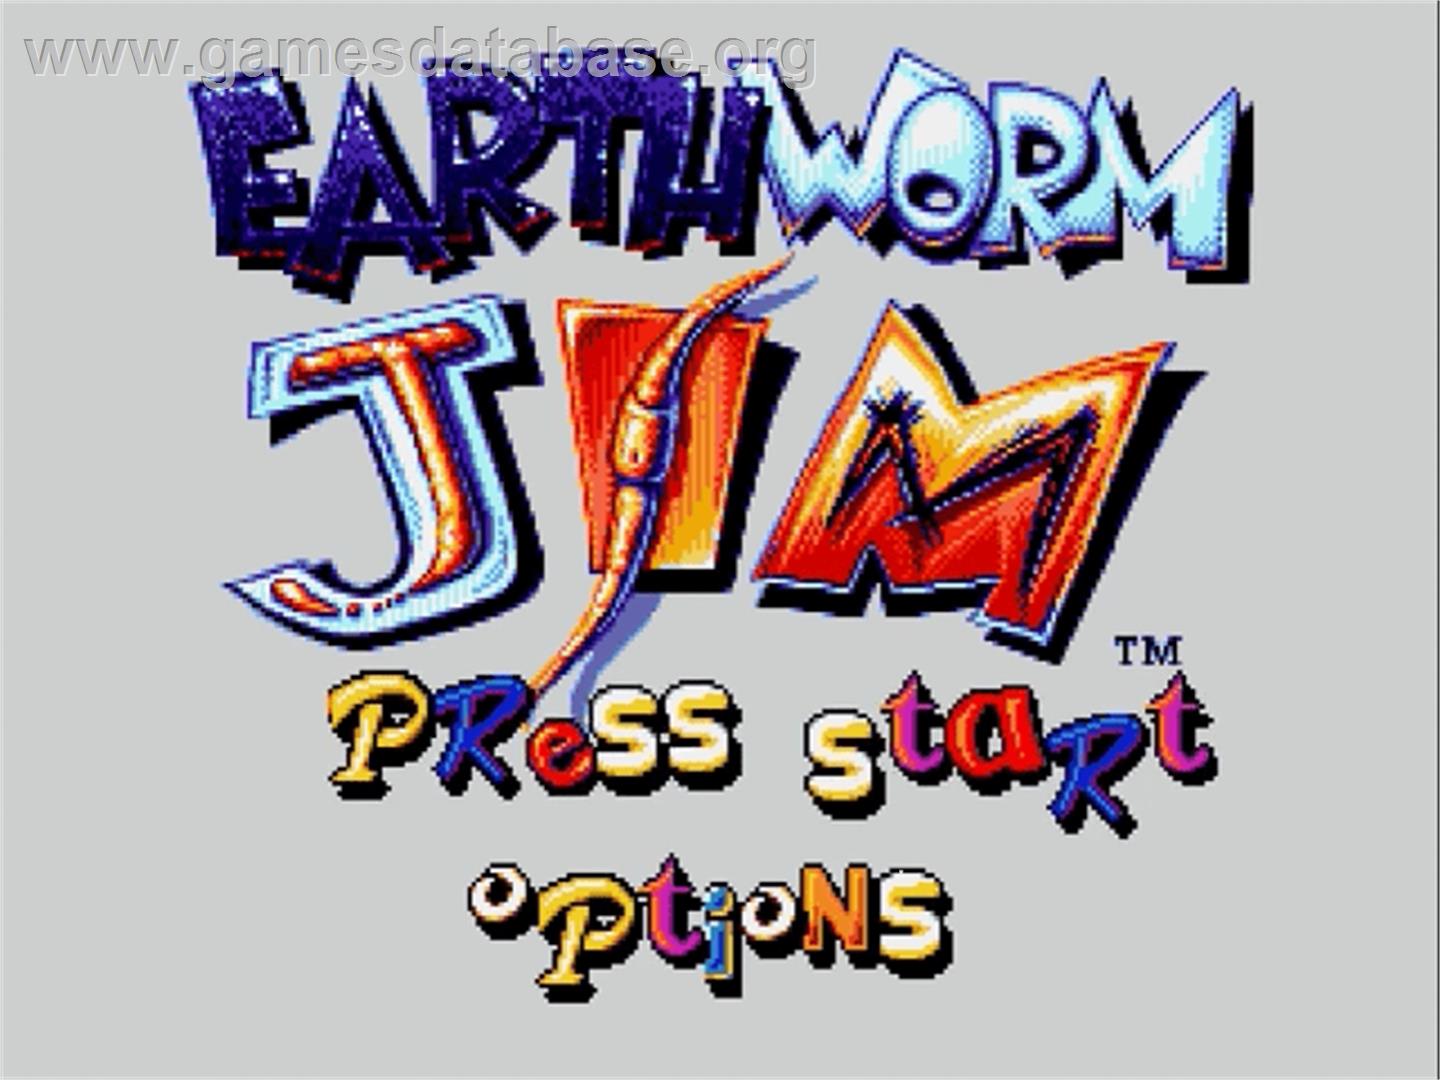 Earthworm Jim - Sega Genesis - Artwork - Title Screen